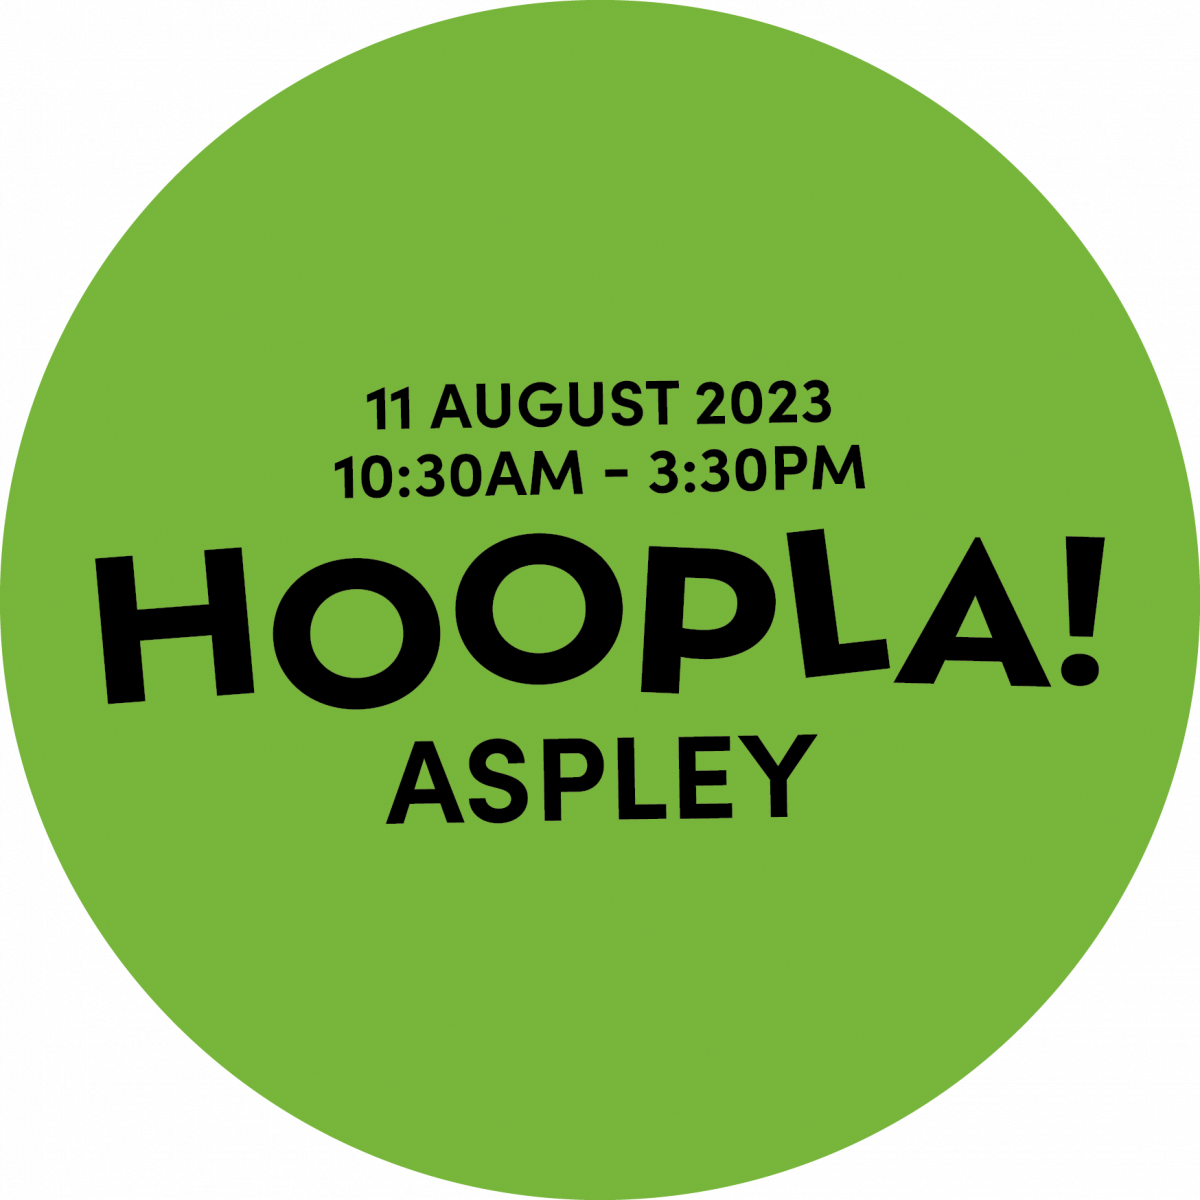 Hoopla! Aspley